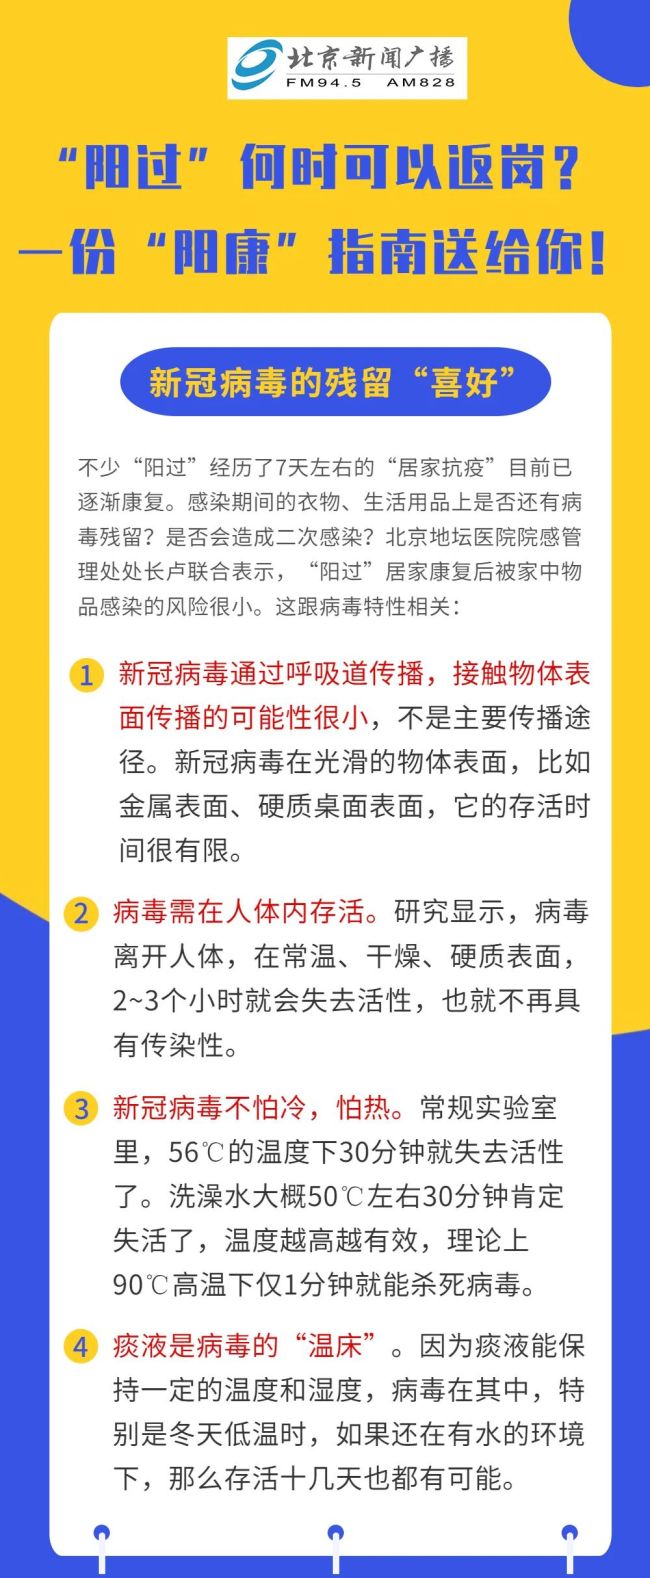 中国空间站因“一杯水”遭外网质疑造假 官方回应 - Peraplay Gaming - Bing 百度热点快讯